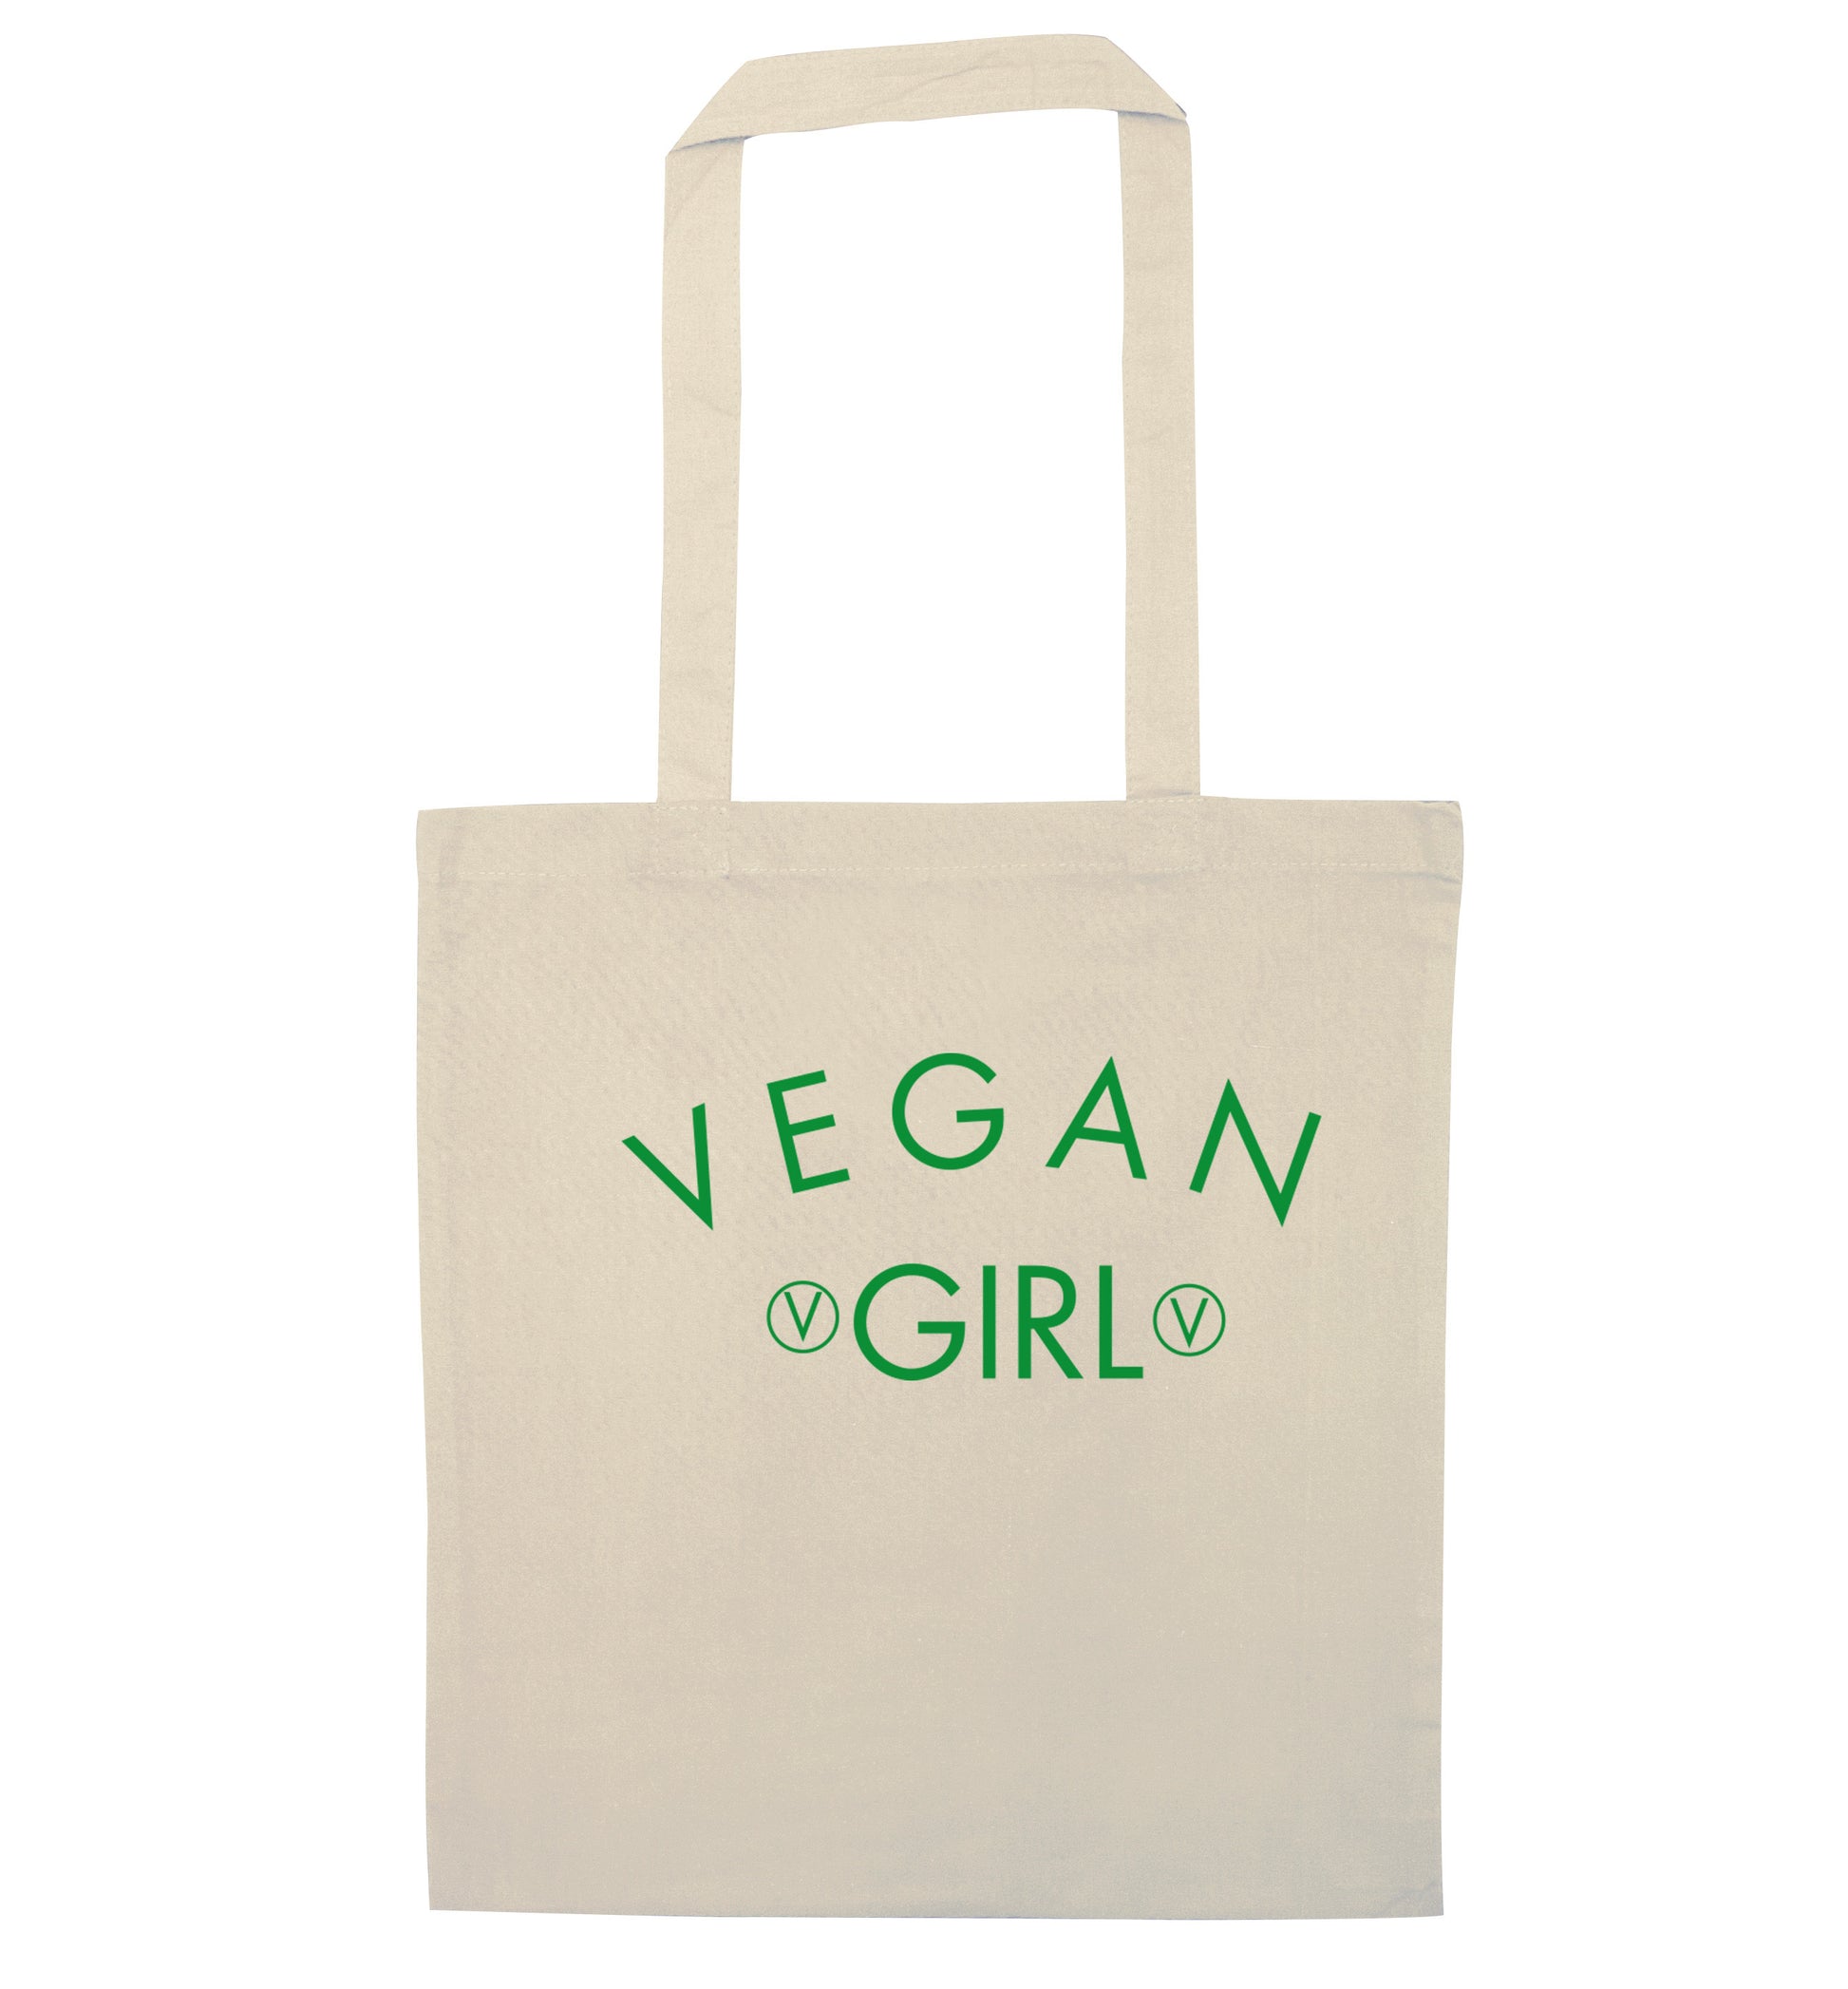 Vegan girl natural tote bag